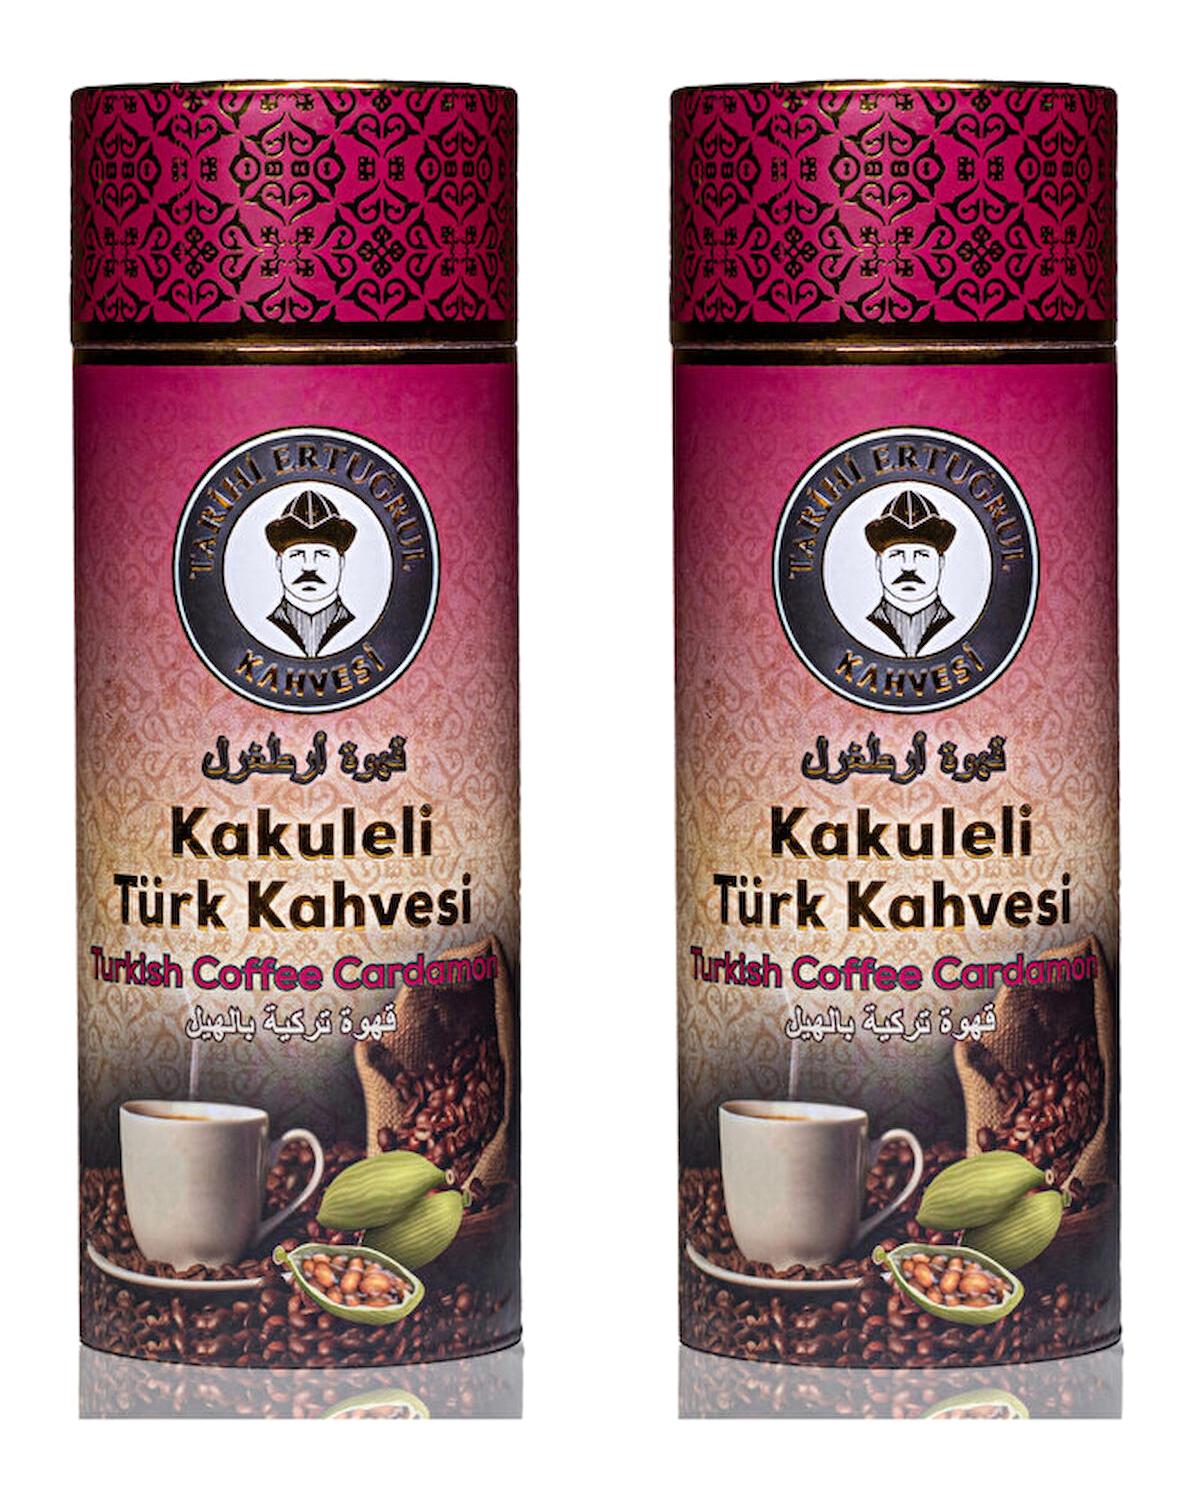 Tarihi Ertuğrul Kahvesi Kakuleli Türk Kahvesi 2x1 kg